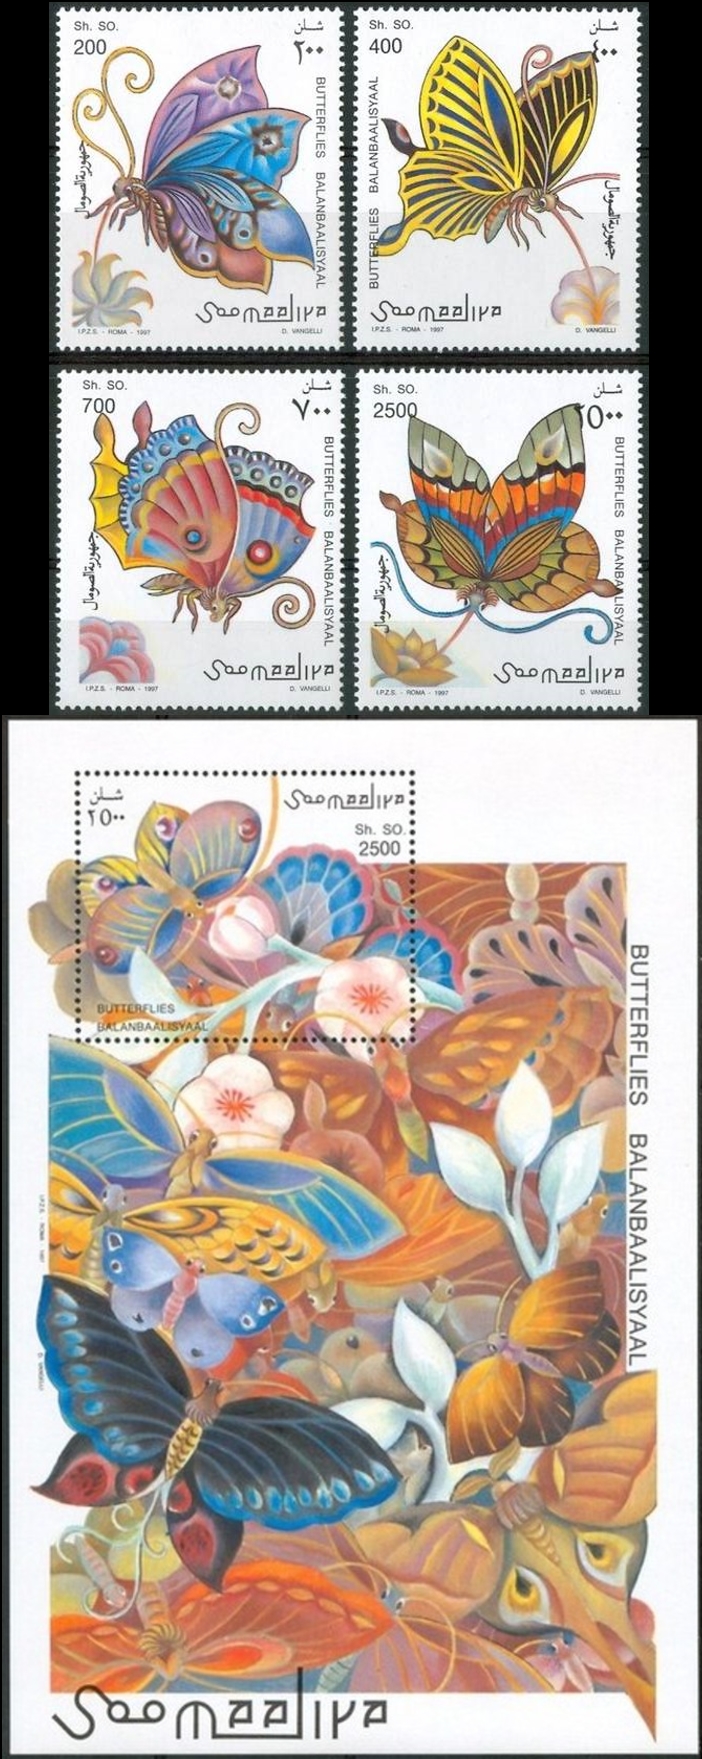 Somalia 1997 Butterflies Fantasy Drawings Michel 636-639 BL 42